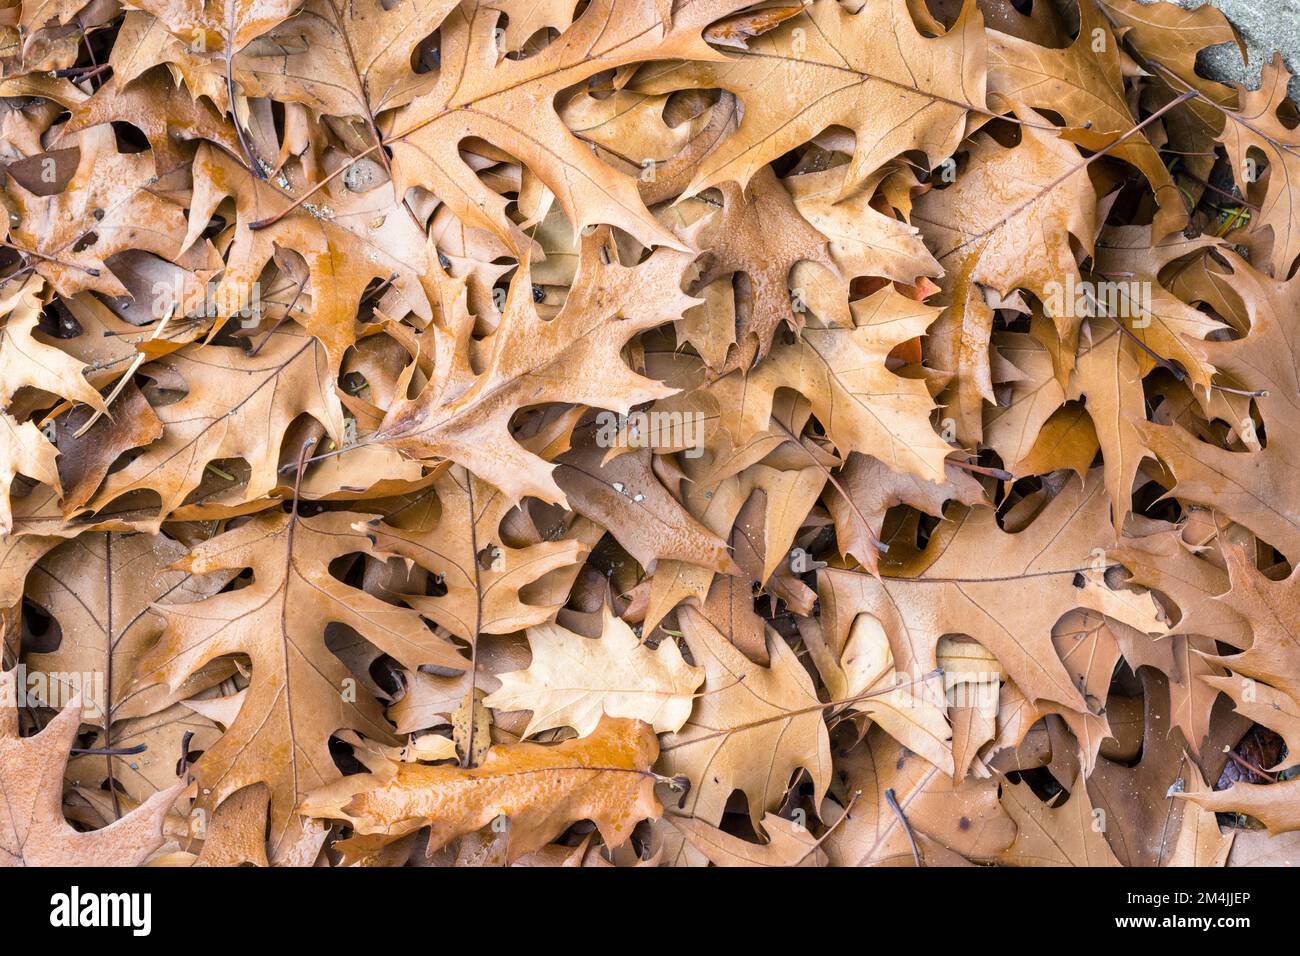 Autumn Leaves Stock Illustration - Download Image Now - Leaf, Oak